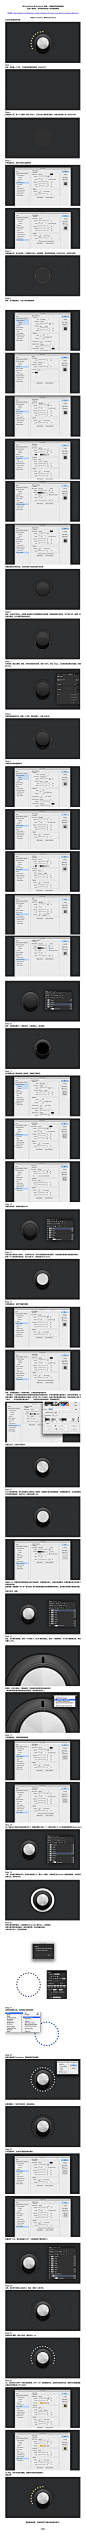 【教程】使用PS和Ai画一个声音控制按钮（含PSD源文件）- by: Daqian.Dong - ICONFANS专业界面设计平台